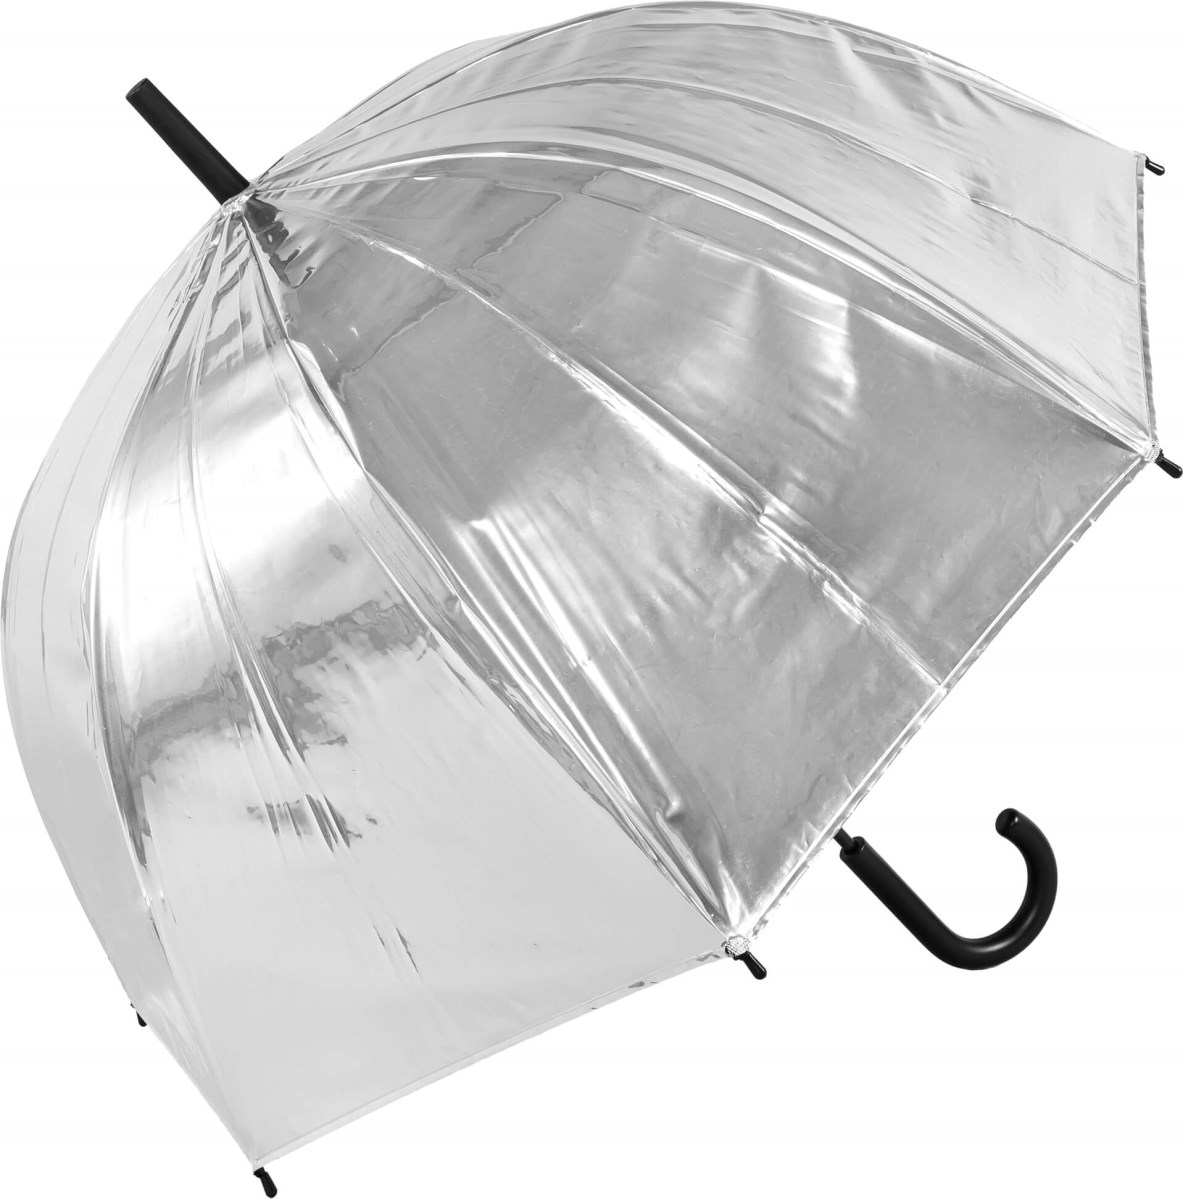 Silver Metallic Birdcage Umbrella Auto Open (18019)